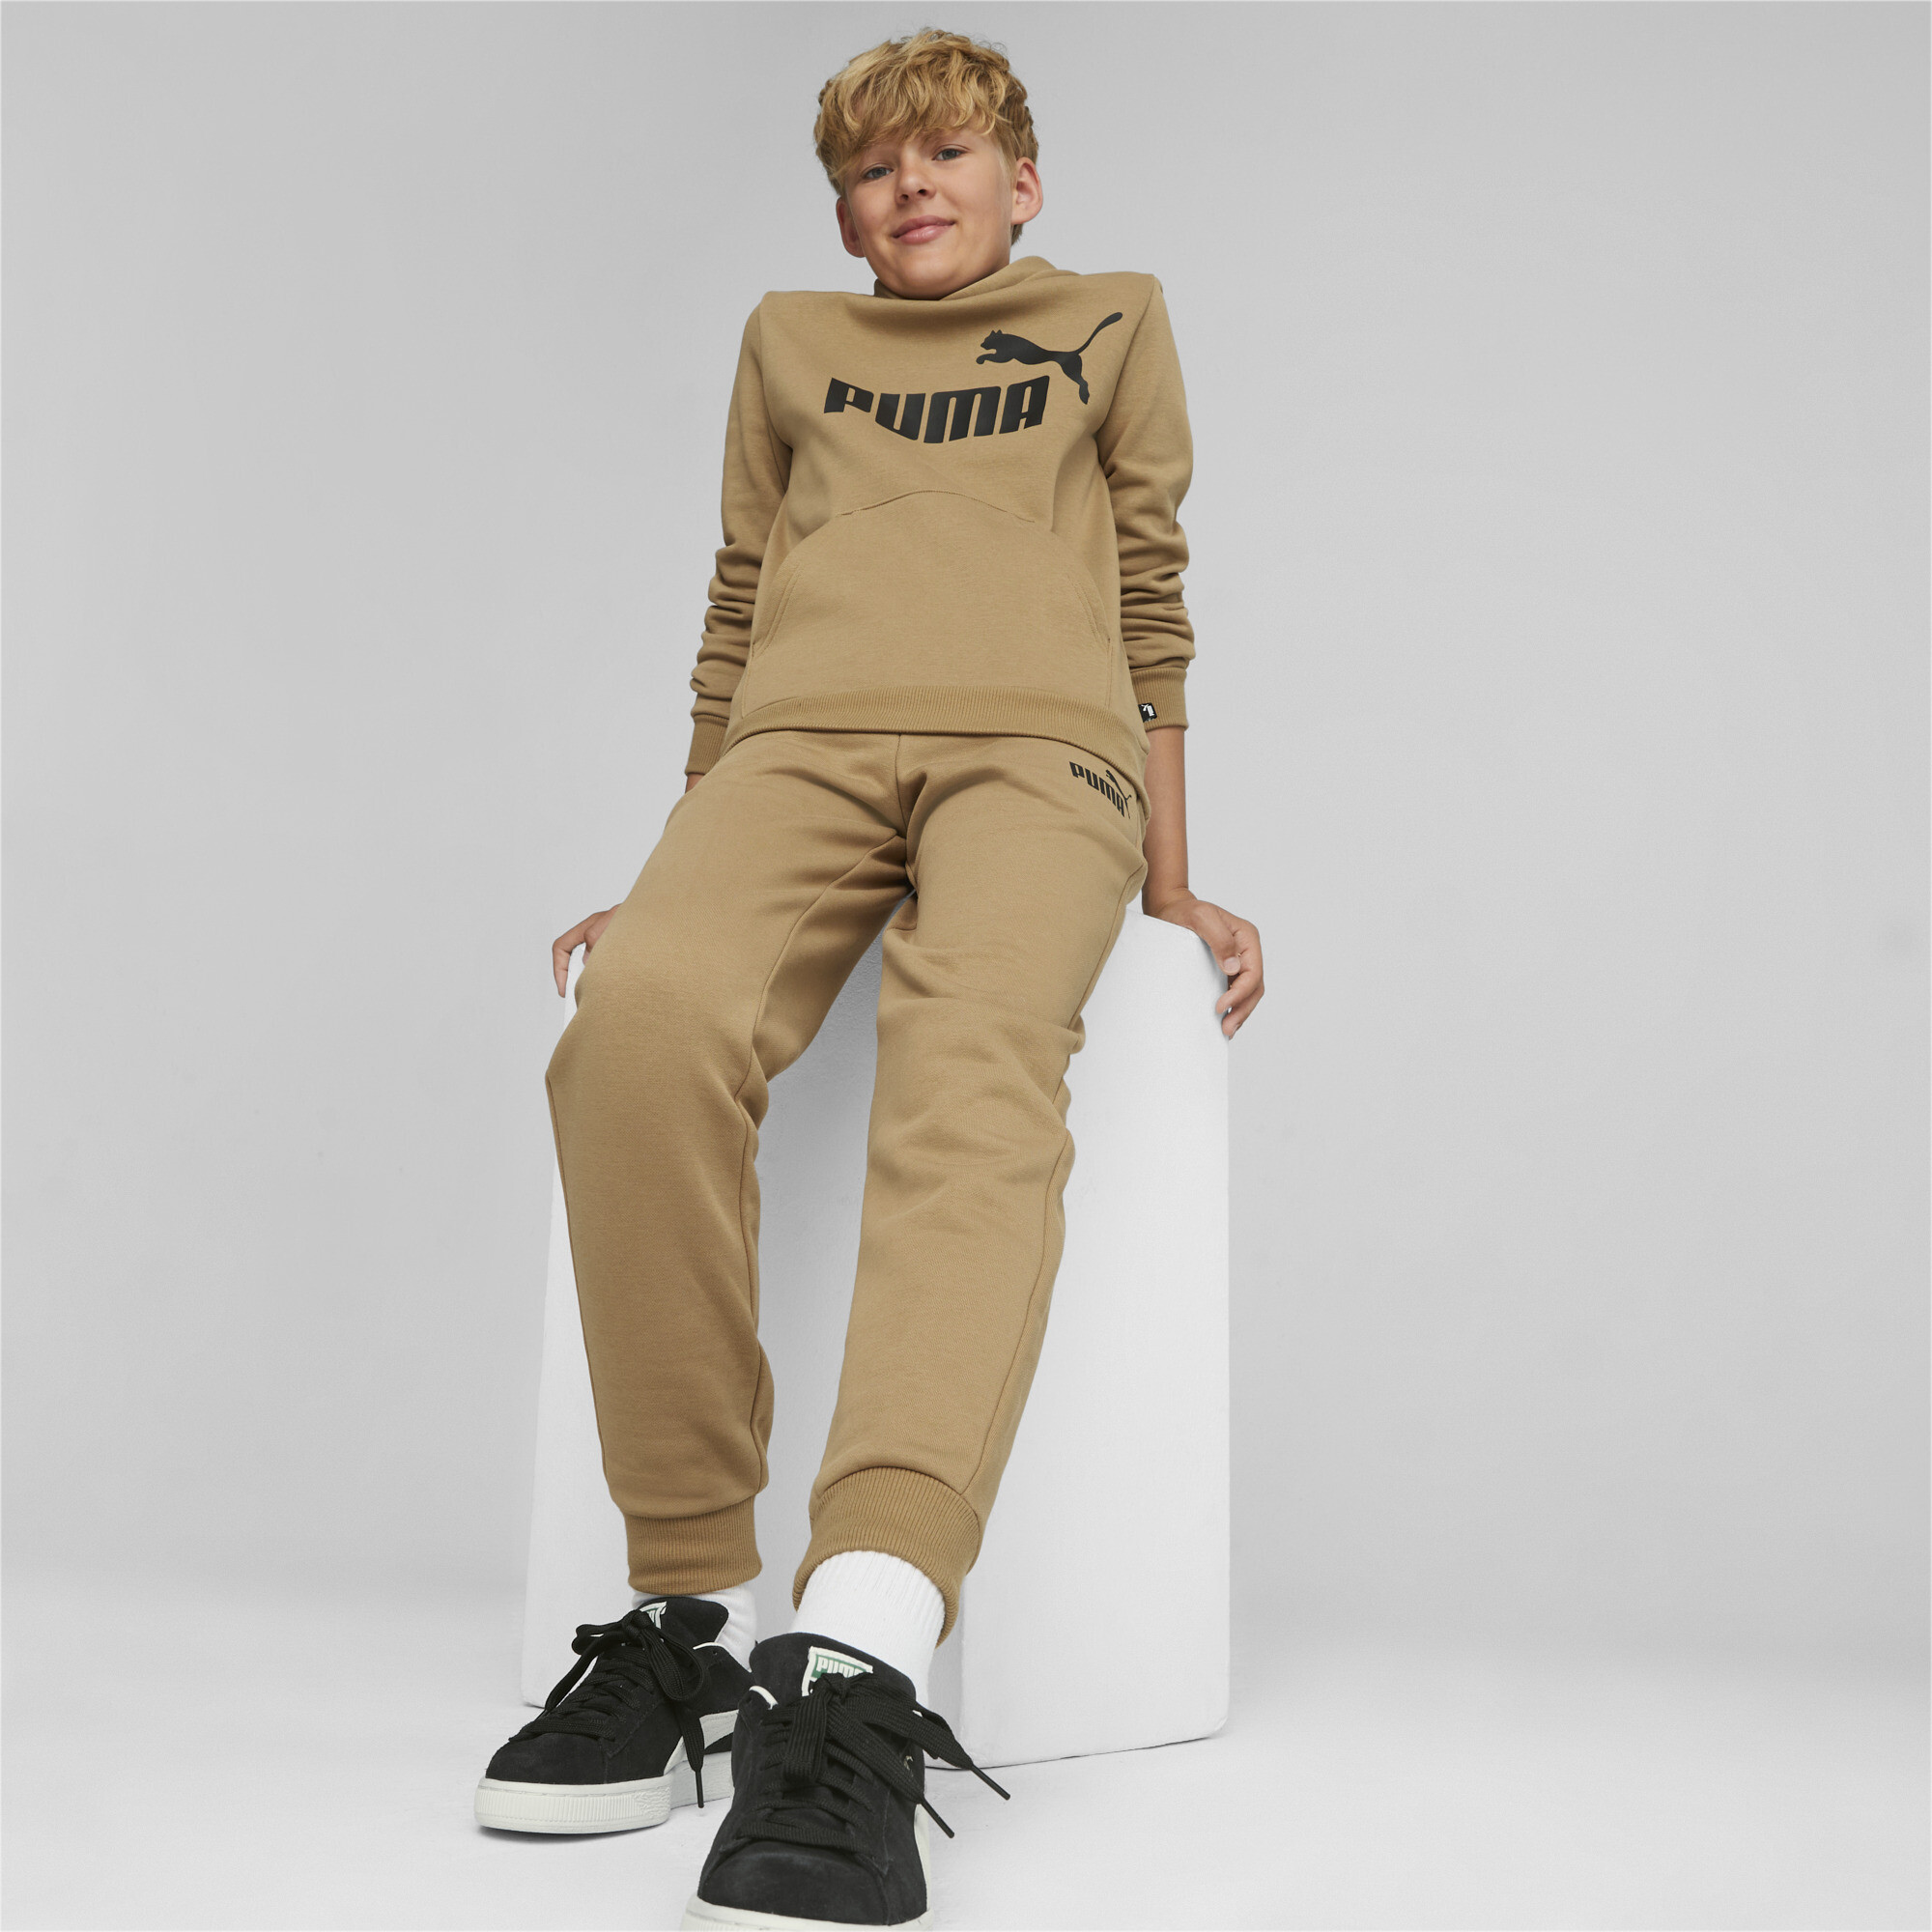 Men's Puma Essentials Big Logo Youth Hoodie, Beige, Size 9-10Y, Clothing